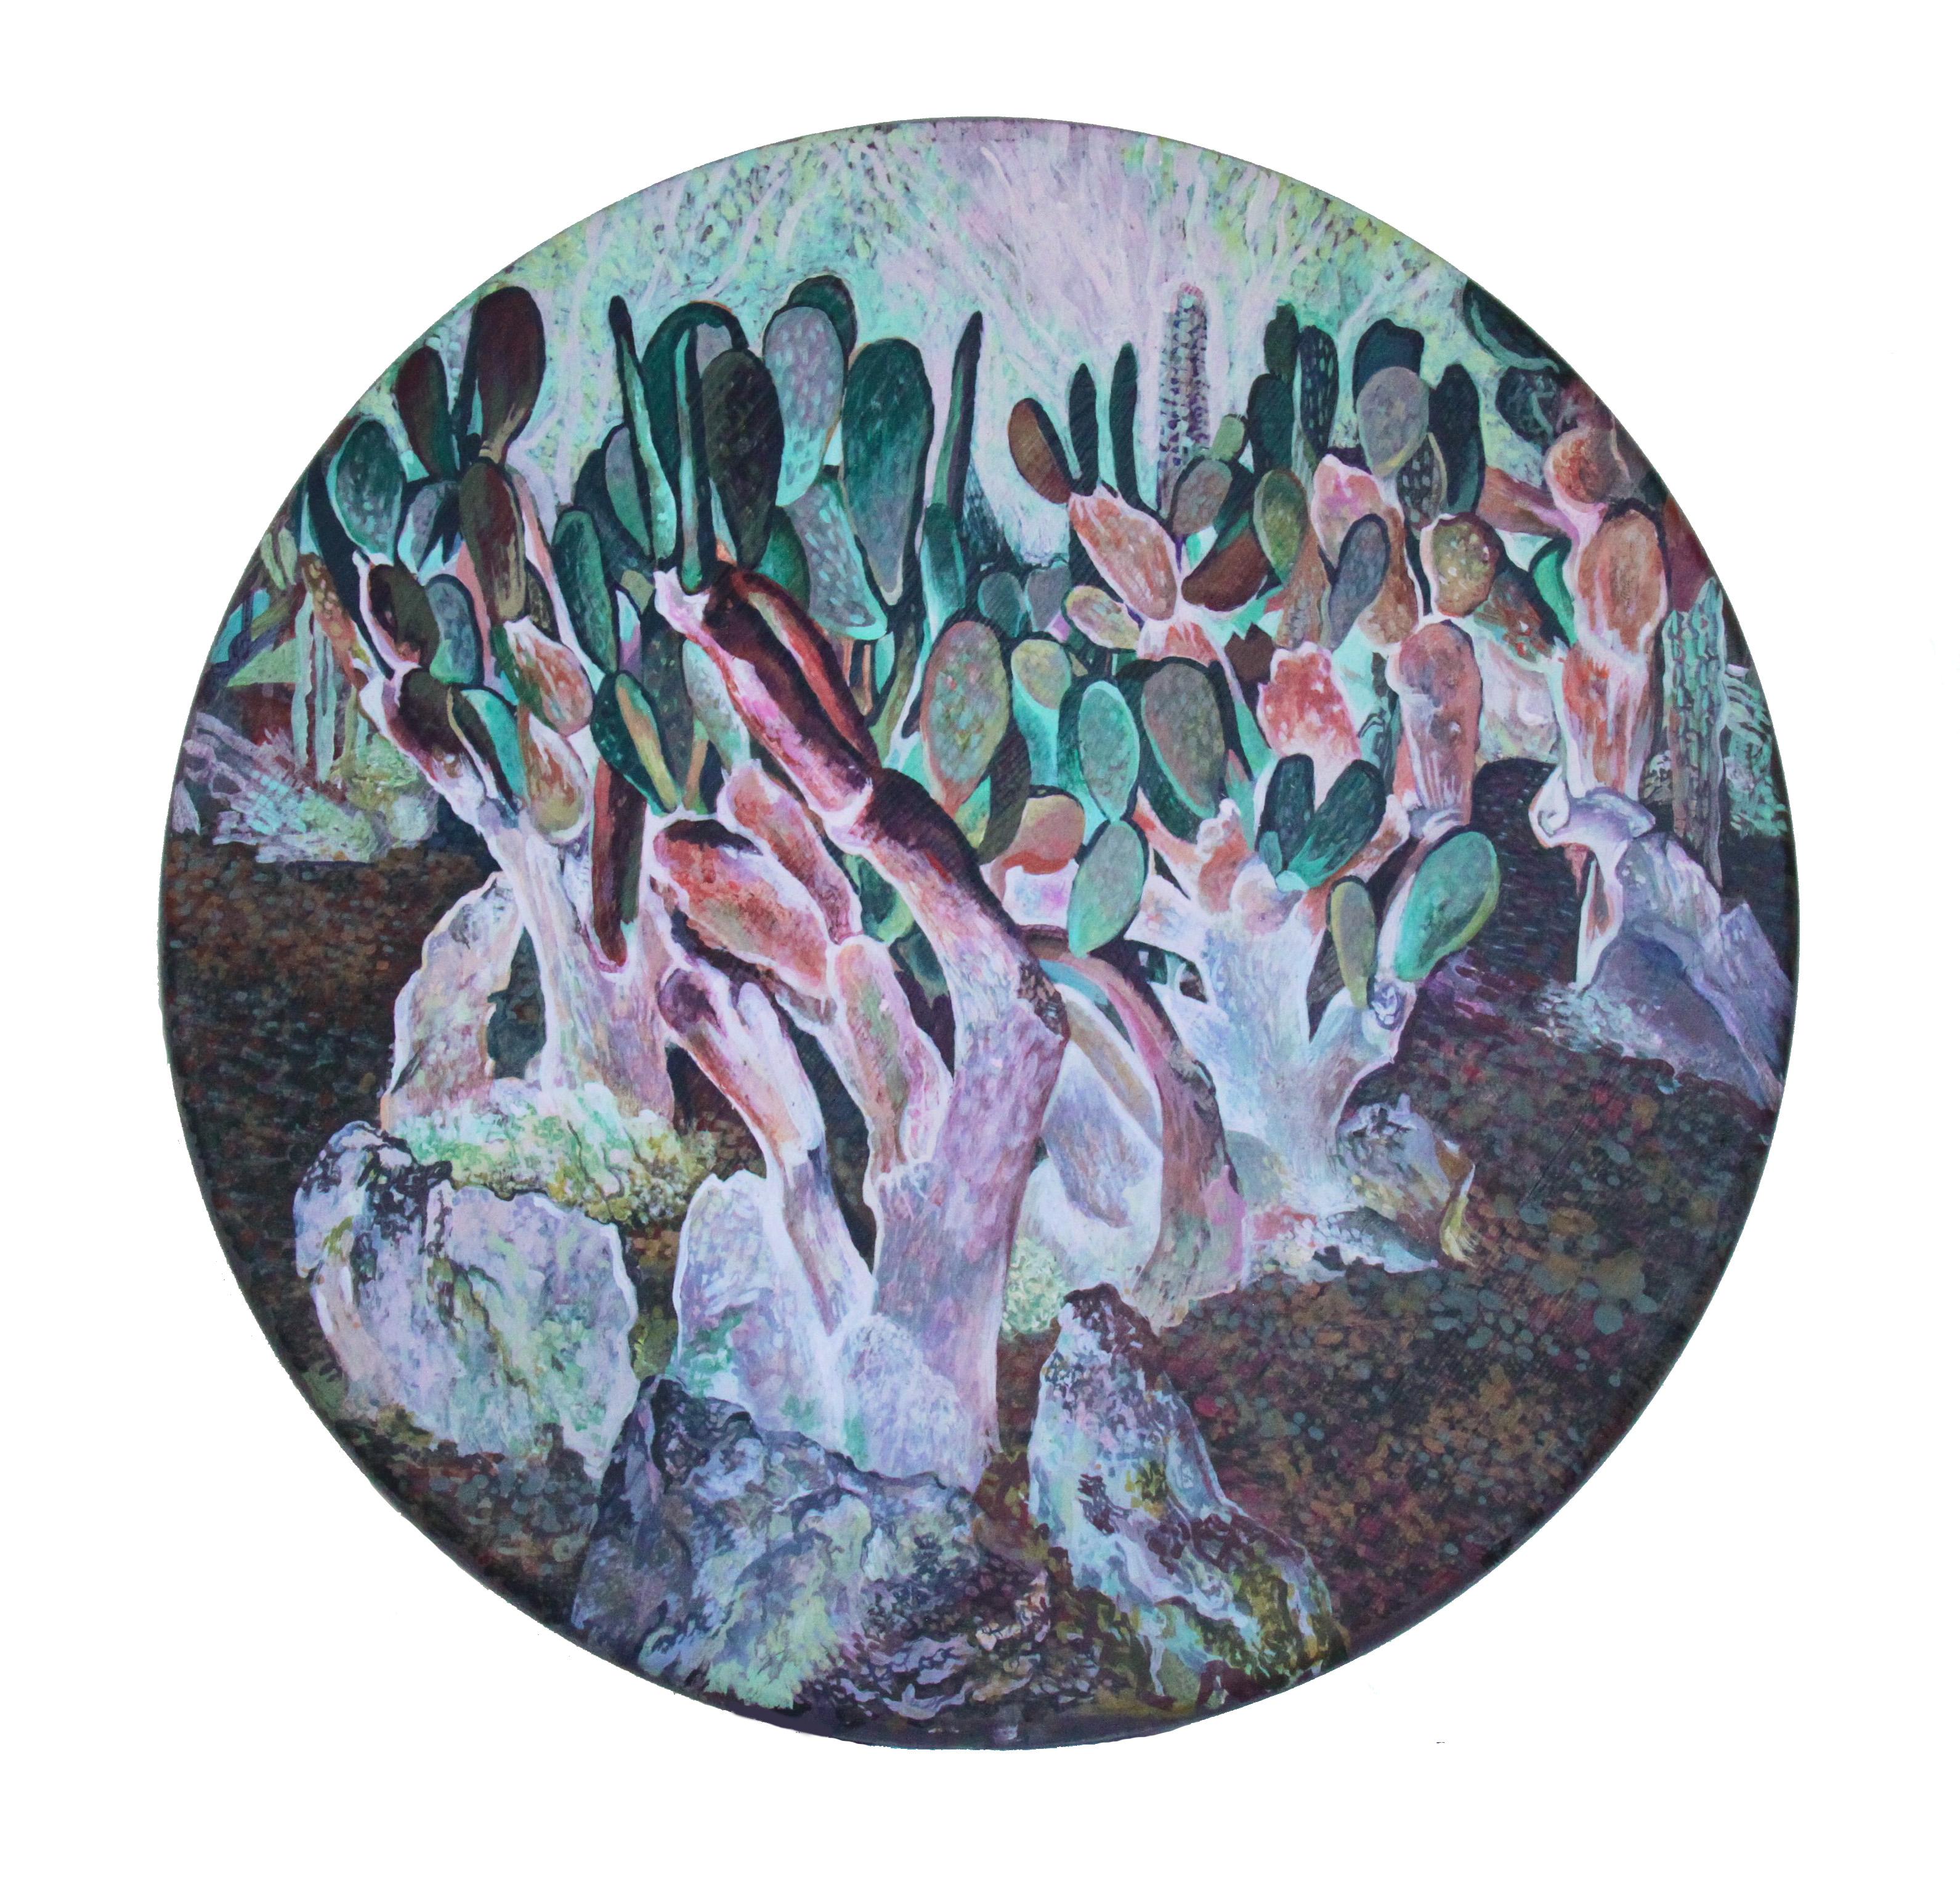 Noon (cactus) - panneau de bois en cercle, fabriqué en lave, violet, vert, rose de couleur